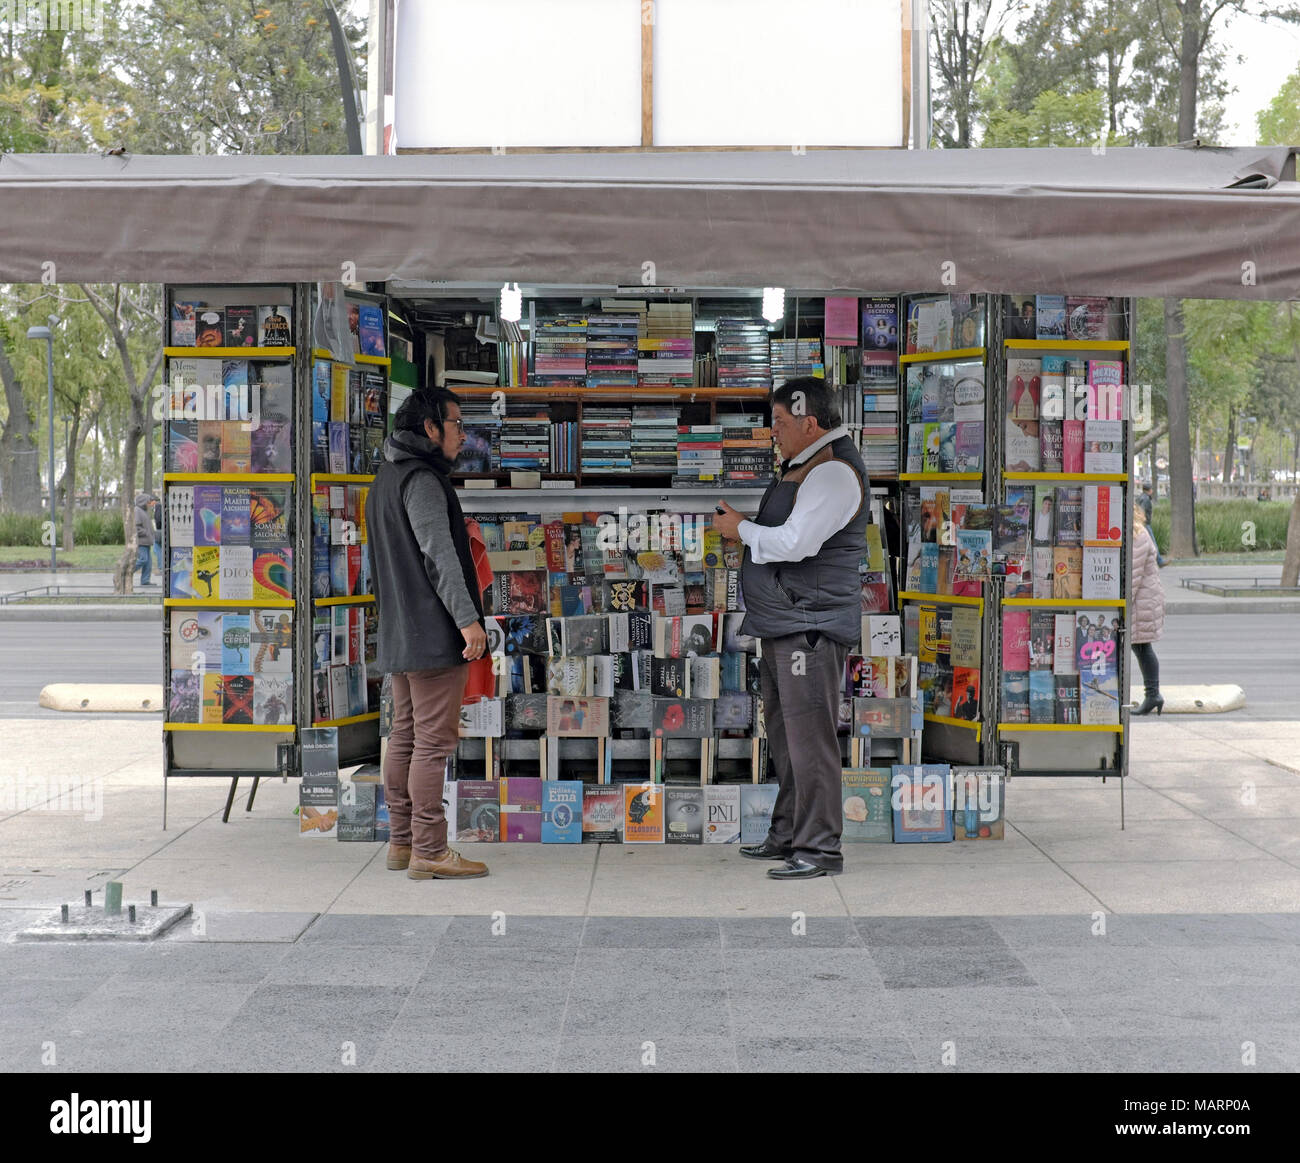 Zwei Männer unterhalten sich unter der Markise von Outdoor bookstand in Mexiko City, Mexiko. Stockfoto